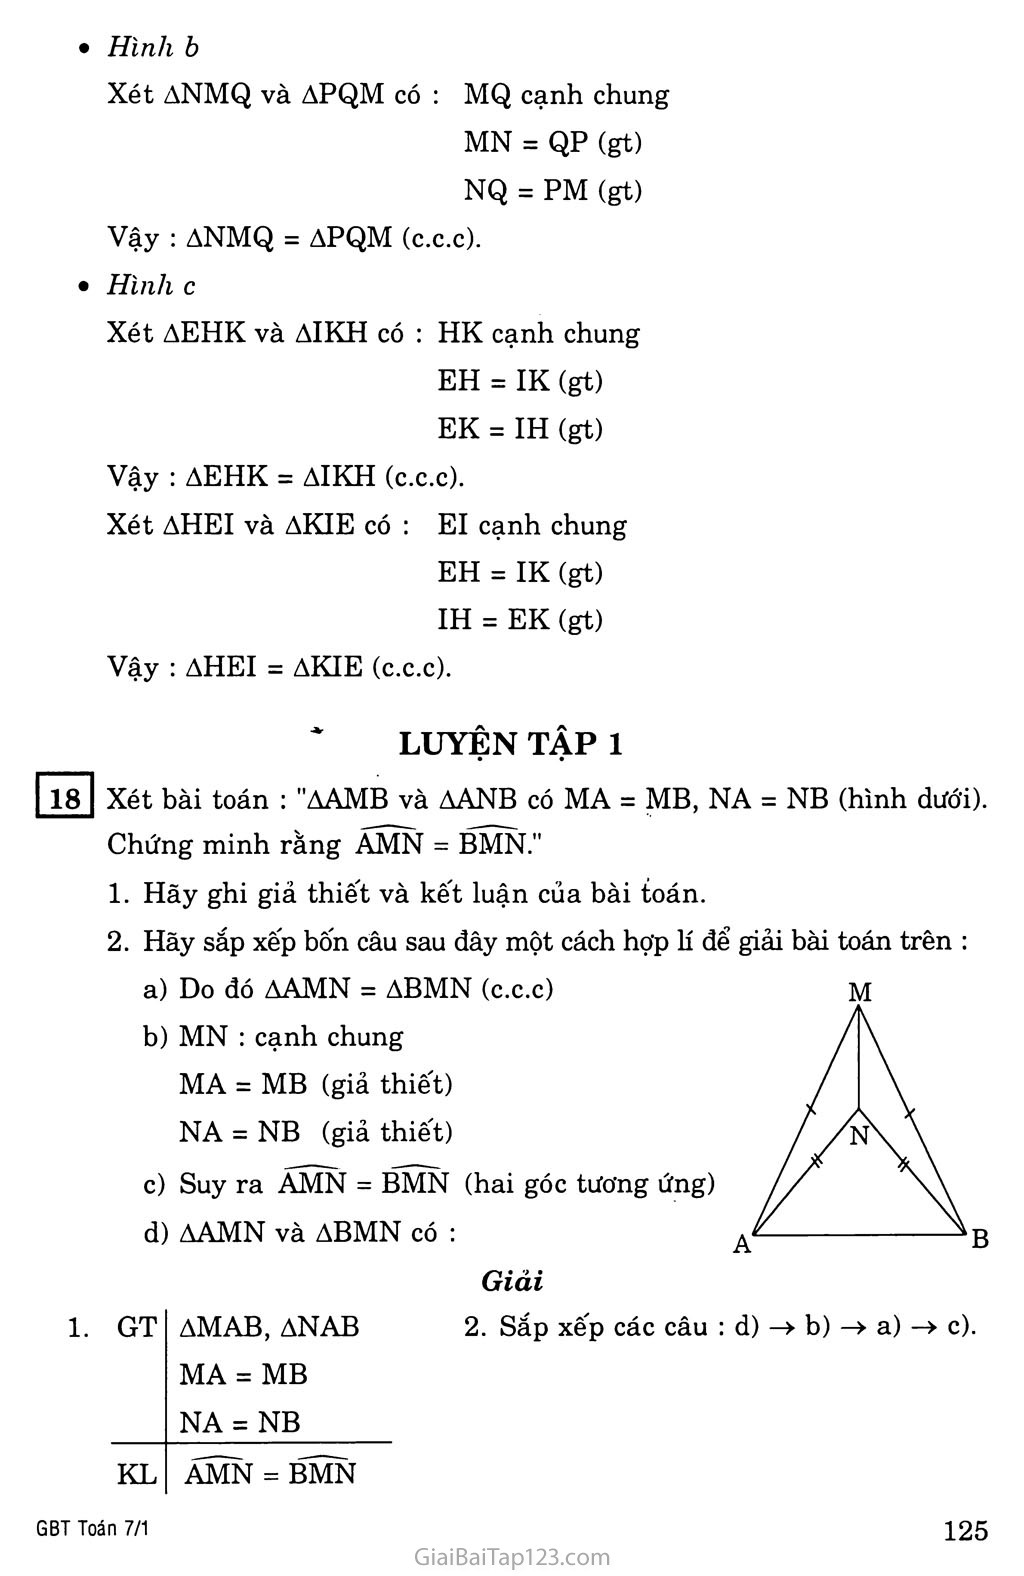 §3. Trường hợp bằng nhau thứ nhất của tam giác: cạnh - cạnh - cạnh (c.c.c) trang 3